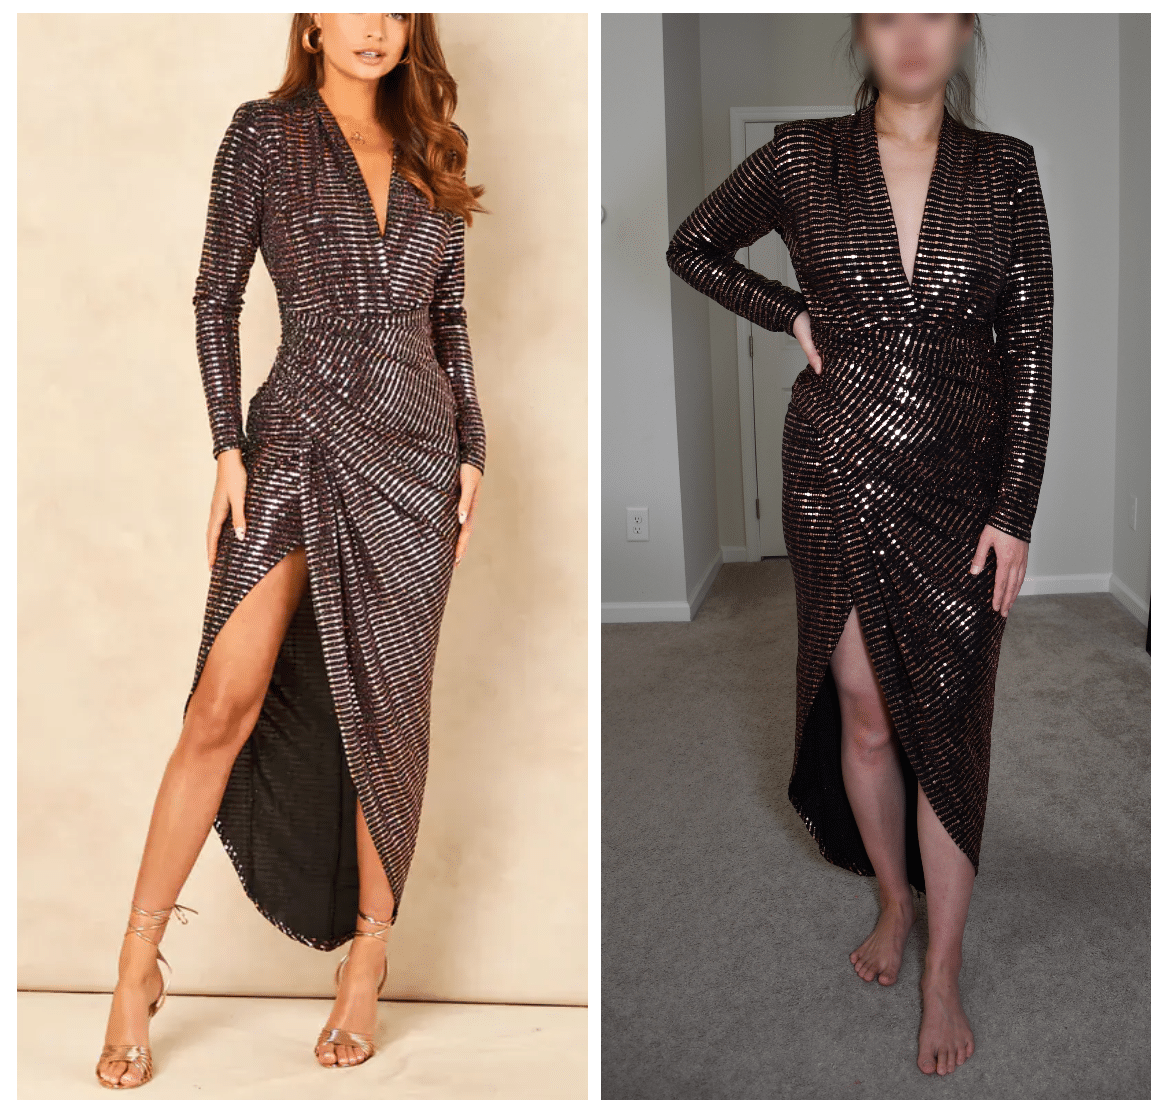 silkfred john zack sequin dress comparison